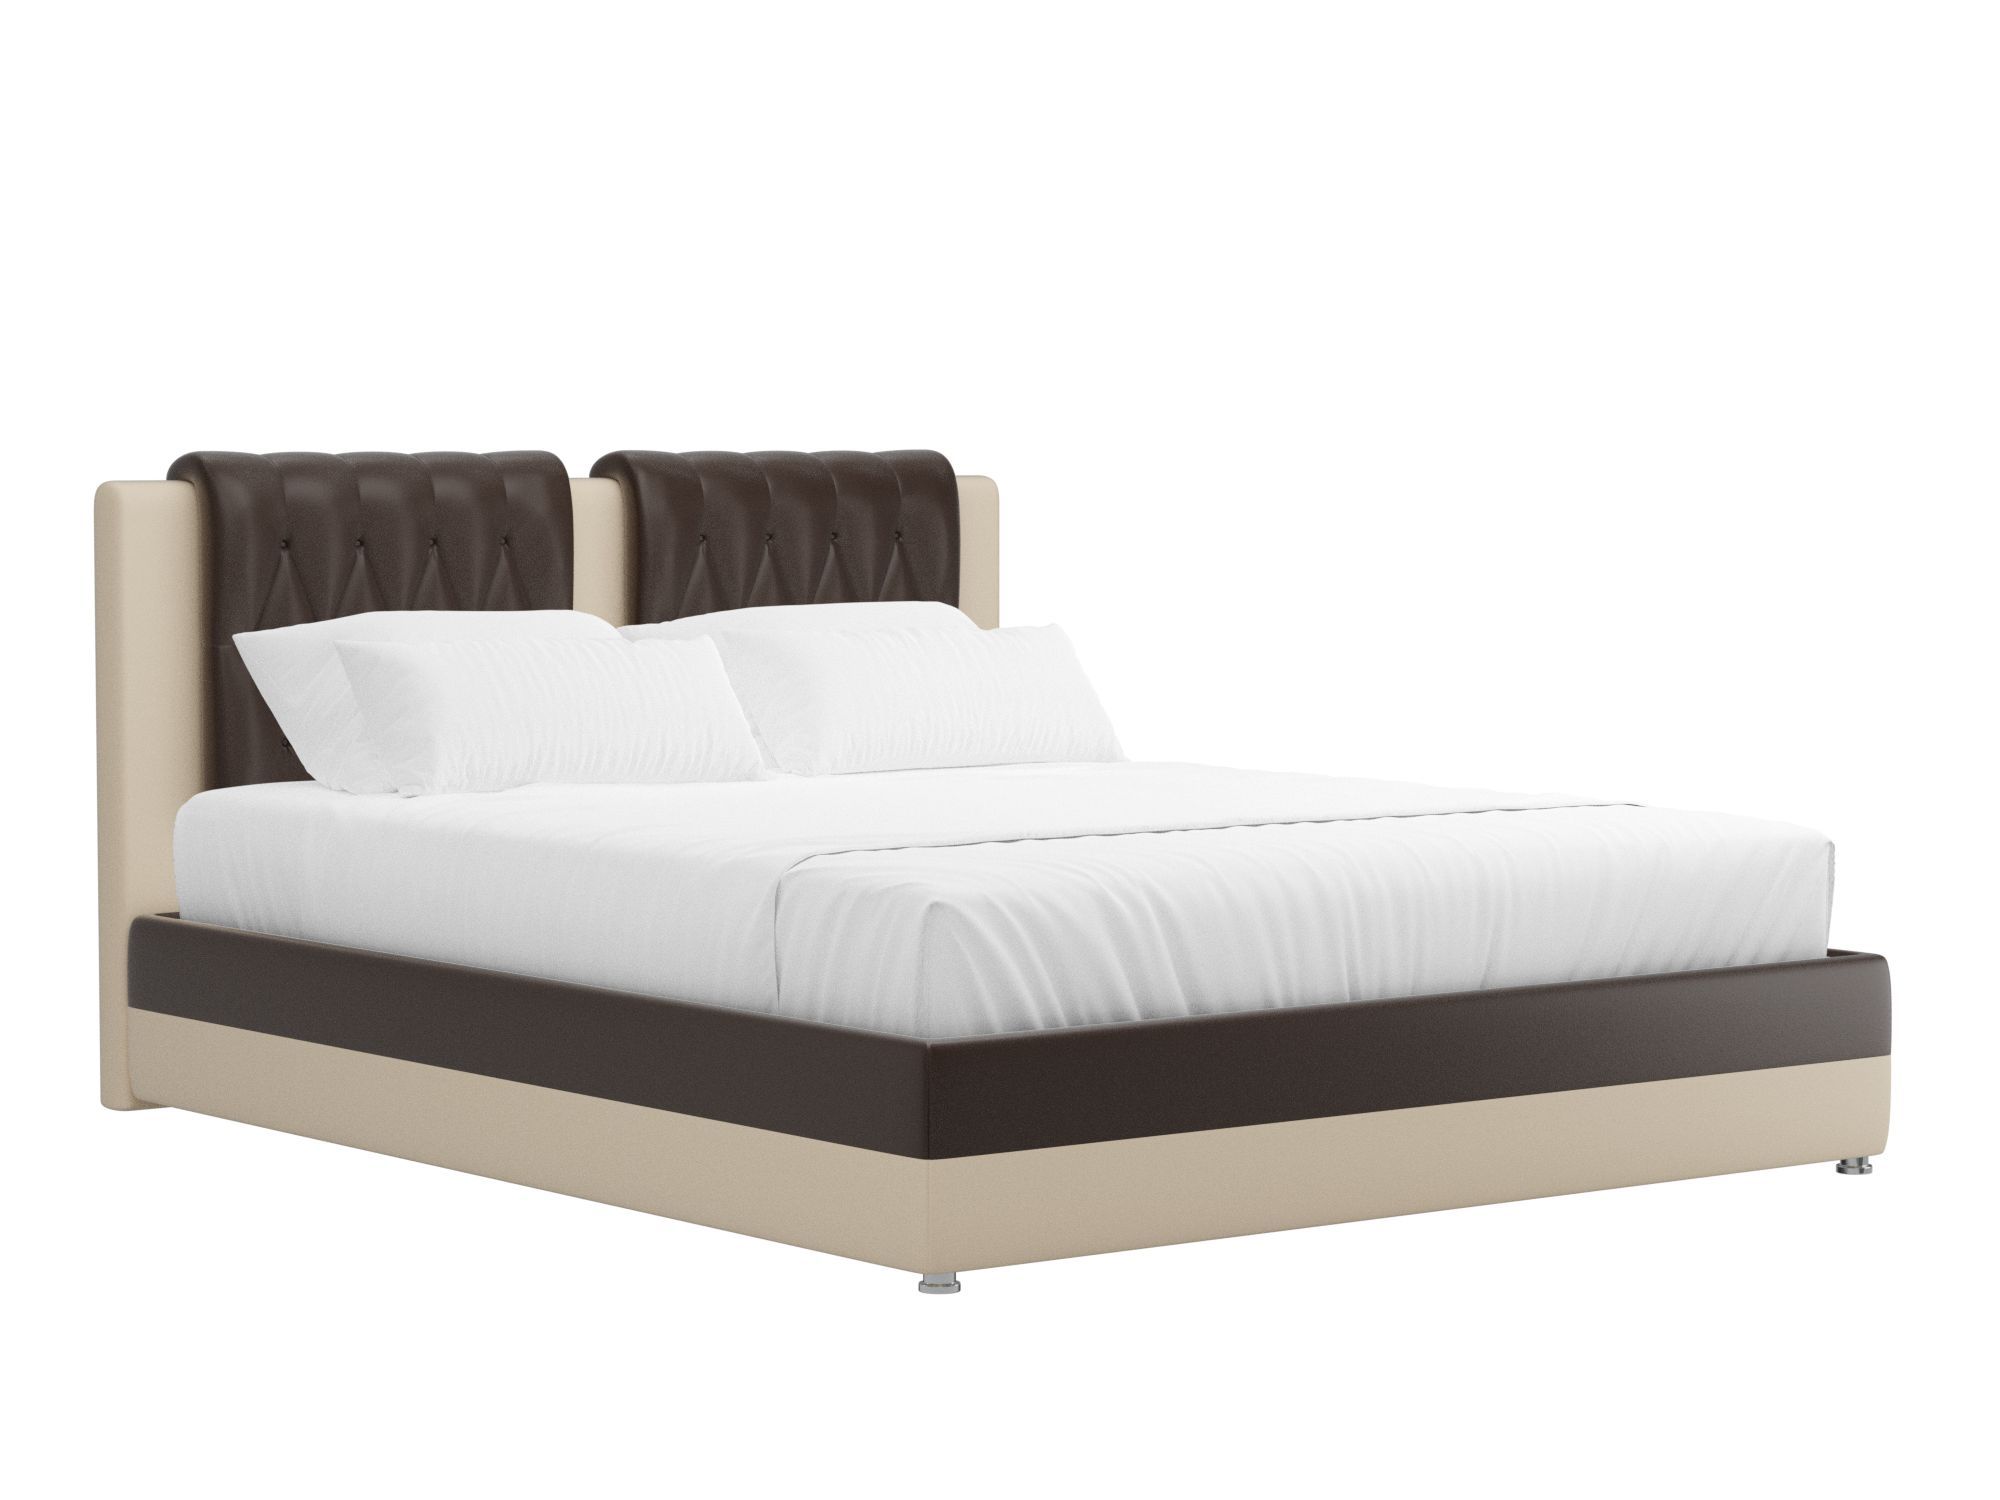 кровать камилла 160x200 бежевый коричневый лдсп Кровать Камилла (160x200) Коричневый, Бежевый, ЛДСП